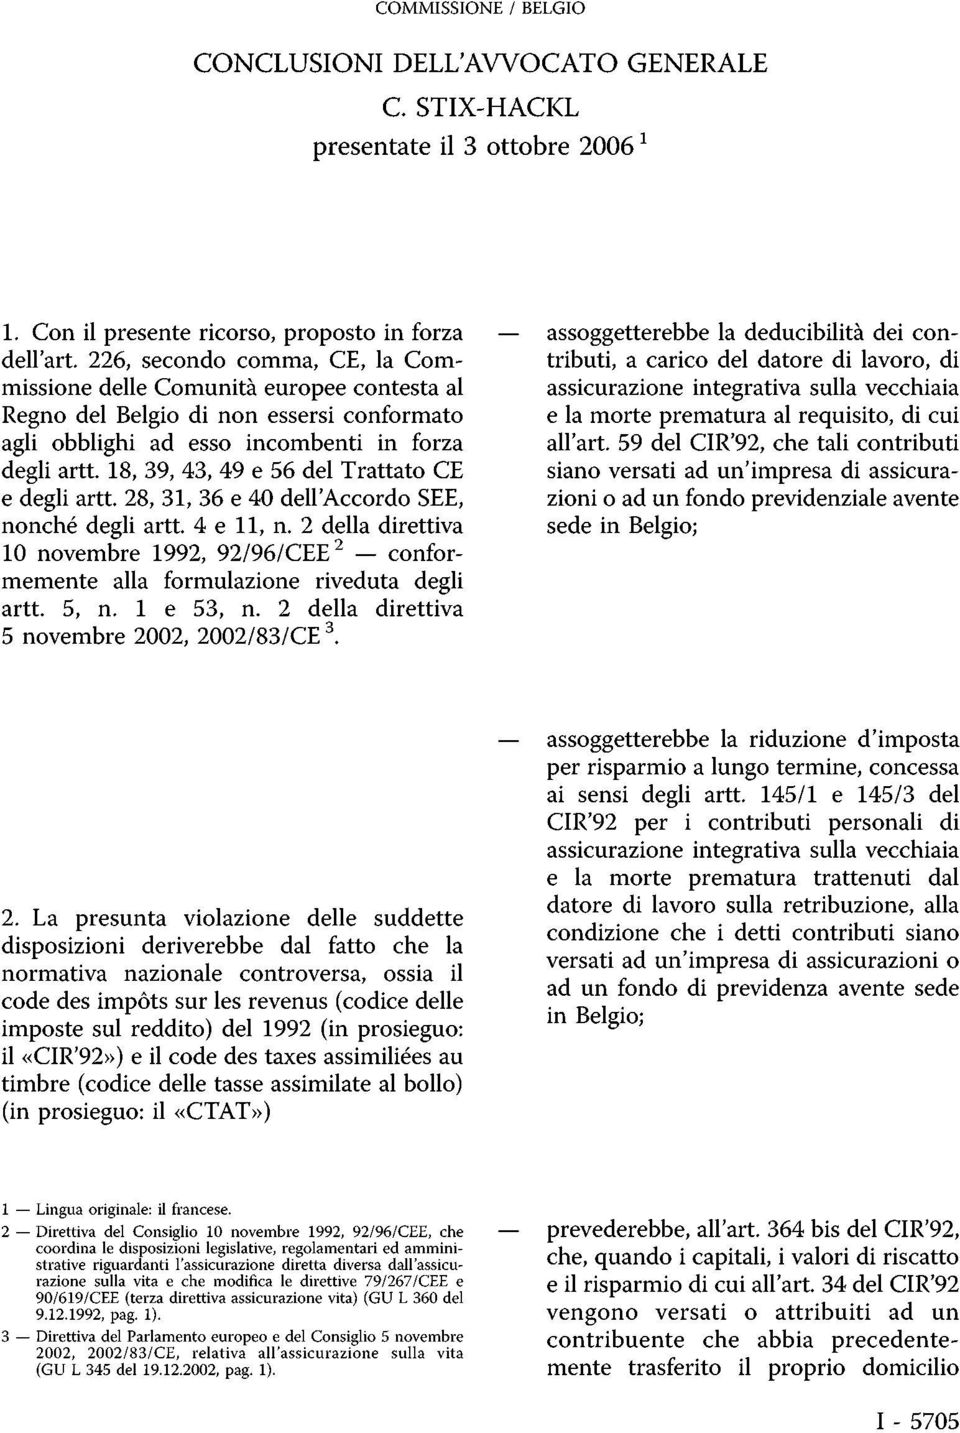 Trattato CE e degli artt. 28, 31, 36 e 40 dell'accordo SEE, nonché degli artt. 4 e 11, n. 2 della direttiva 10 novembre 1992, 92/96/CEE 2 conformemente alla formulazione riveduta degli artt. 5, n.